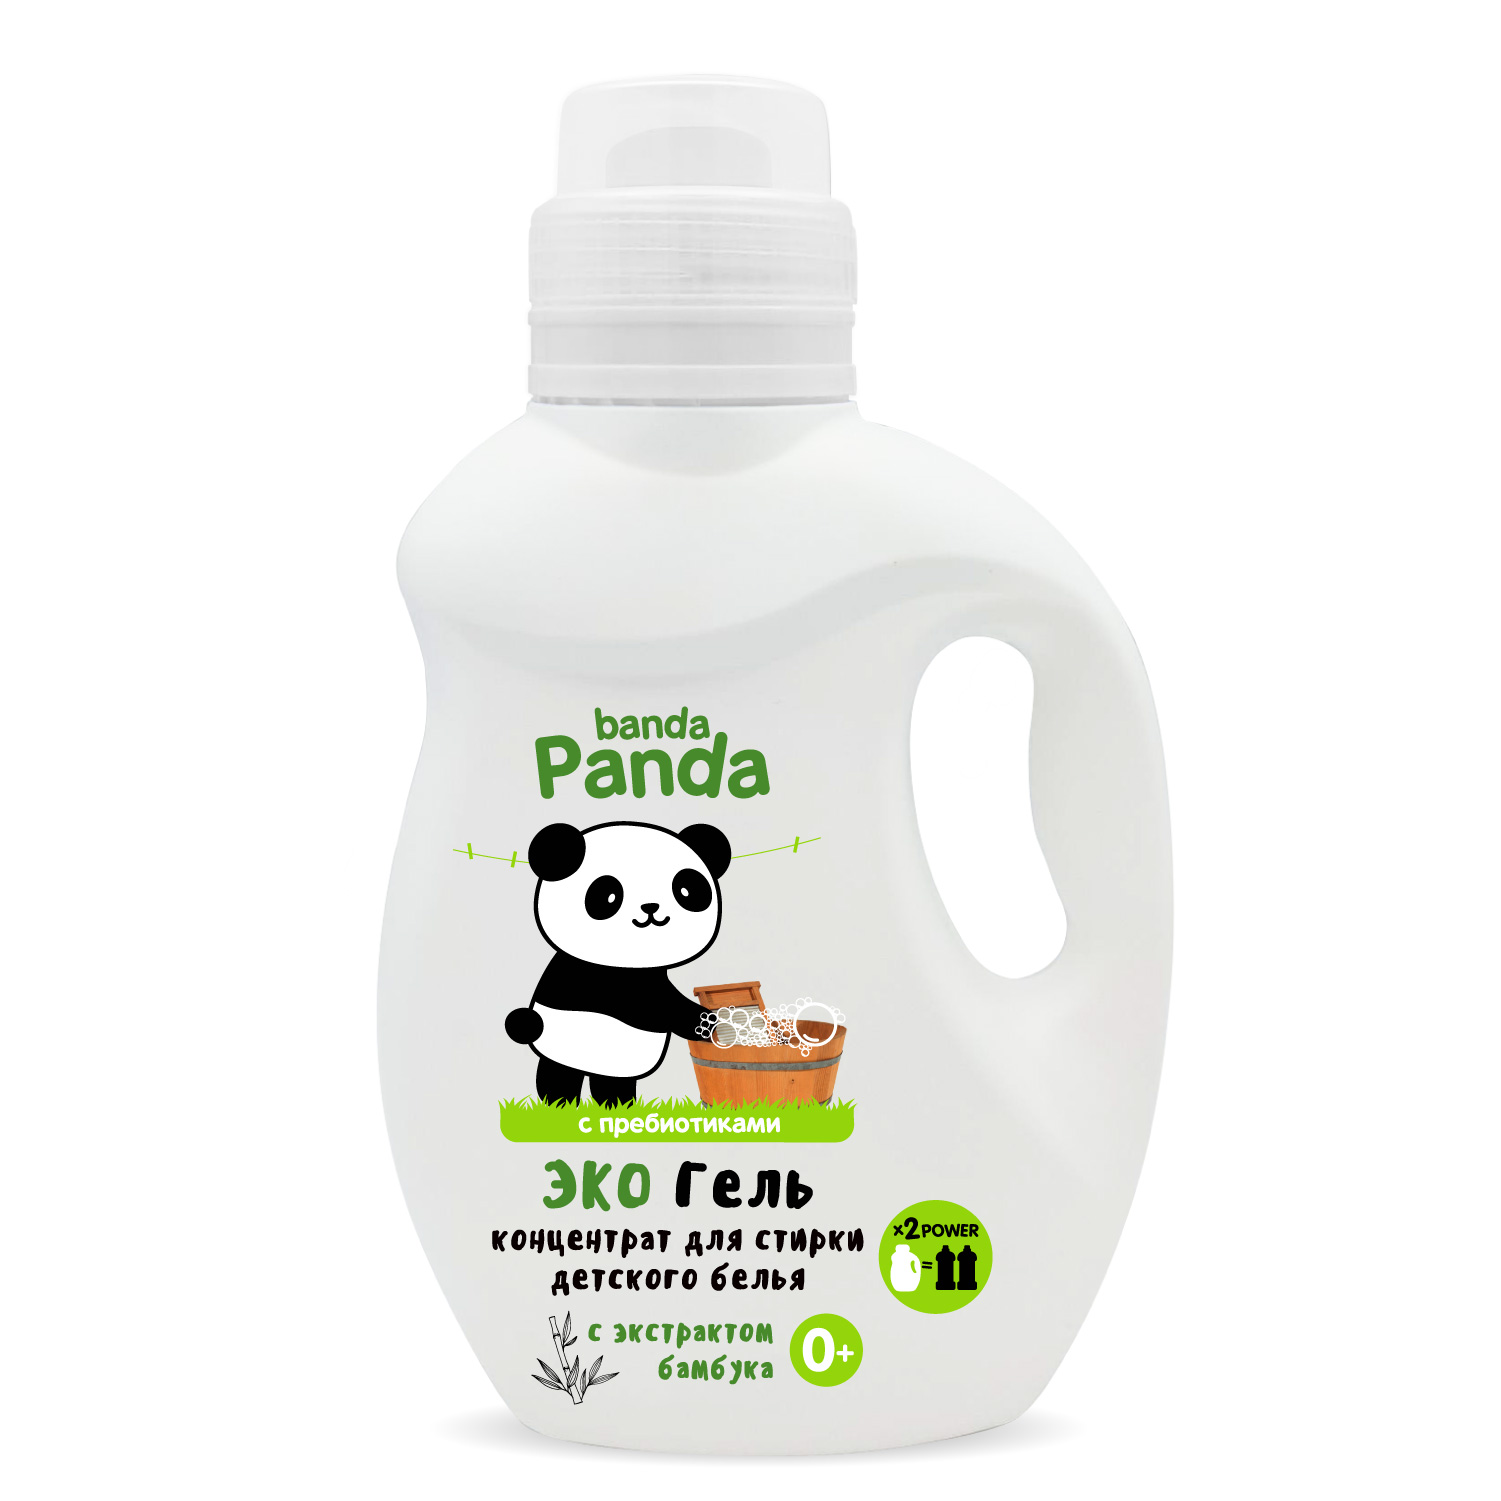 Гель для ежедневной стирки детских вещей серии banda Panda,1000 мл.